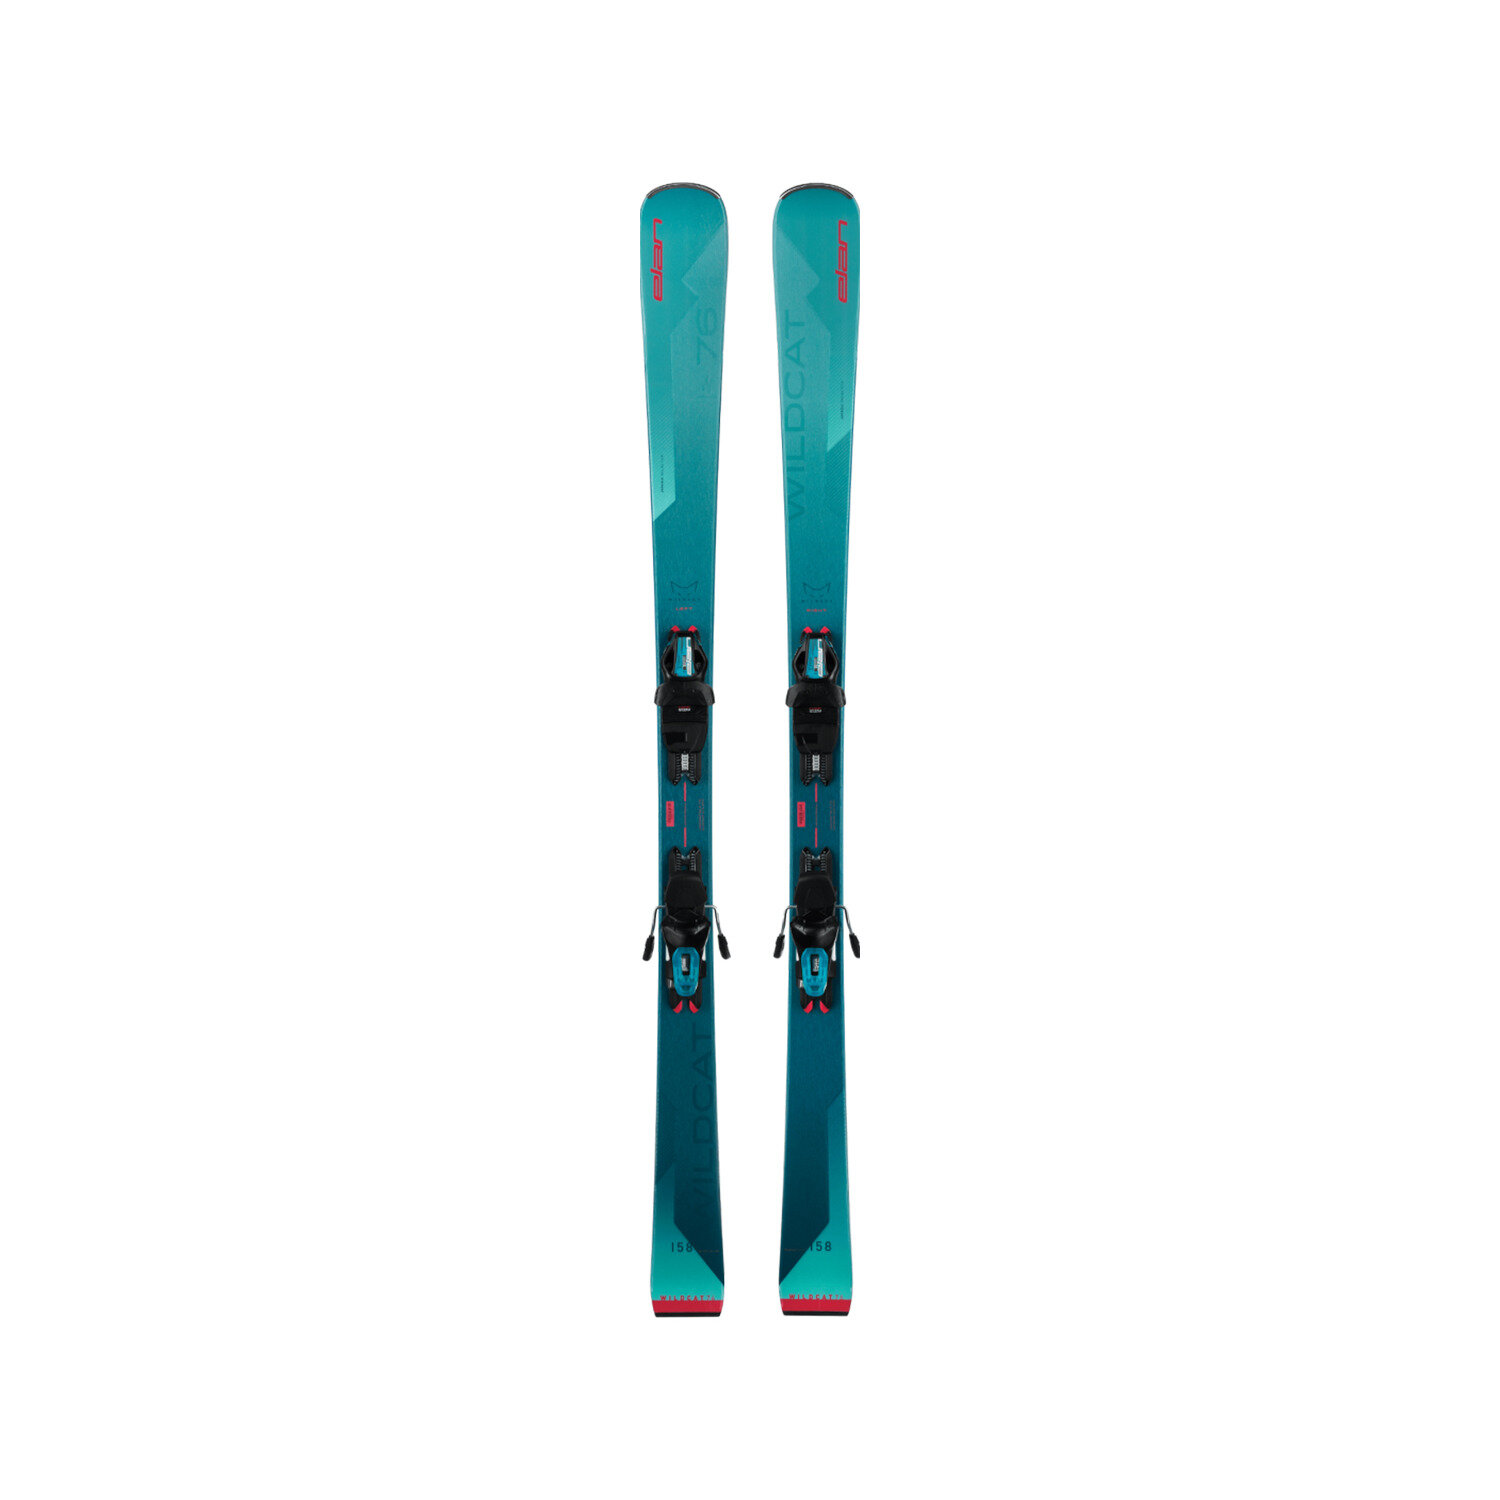 Горные лыжи Elan Wildcat 76 LS + ELW 9.0 (158)23/24